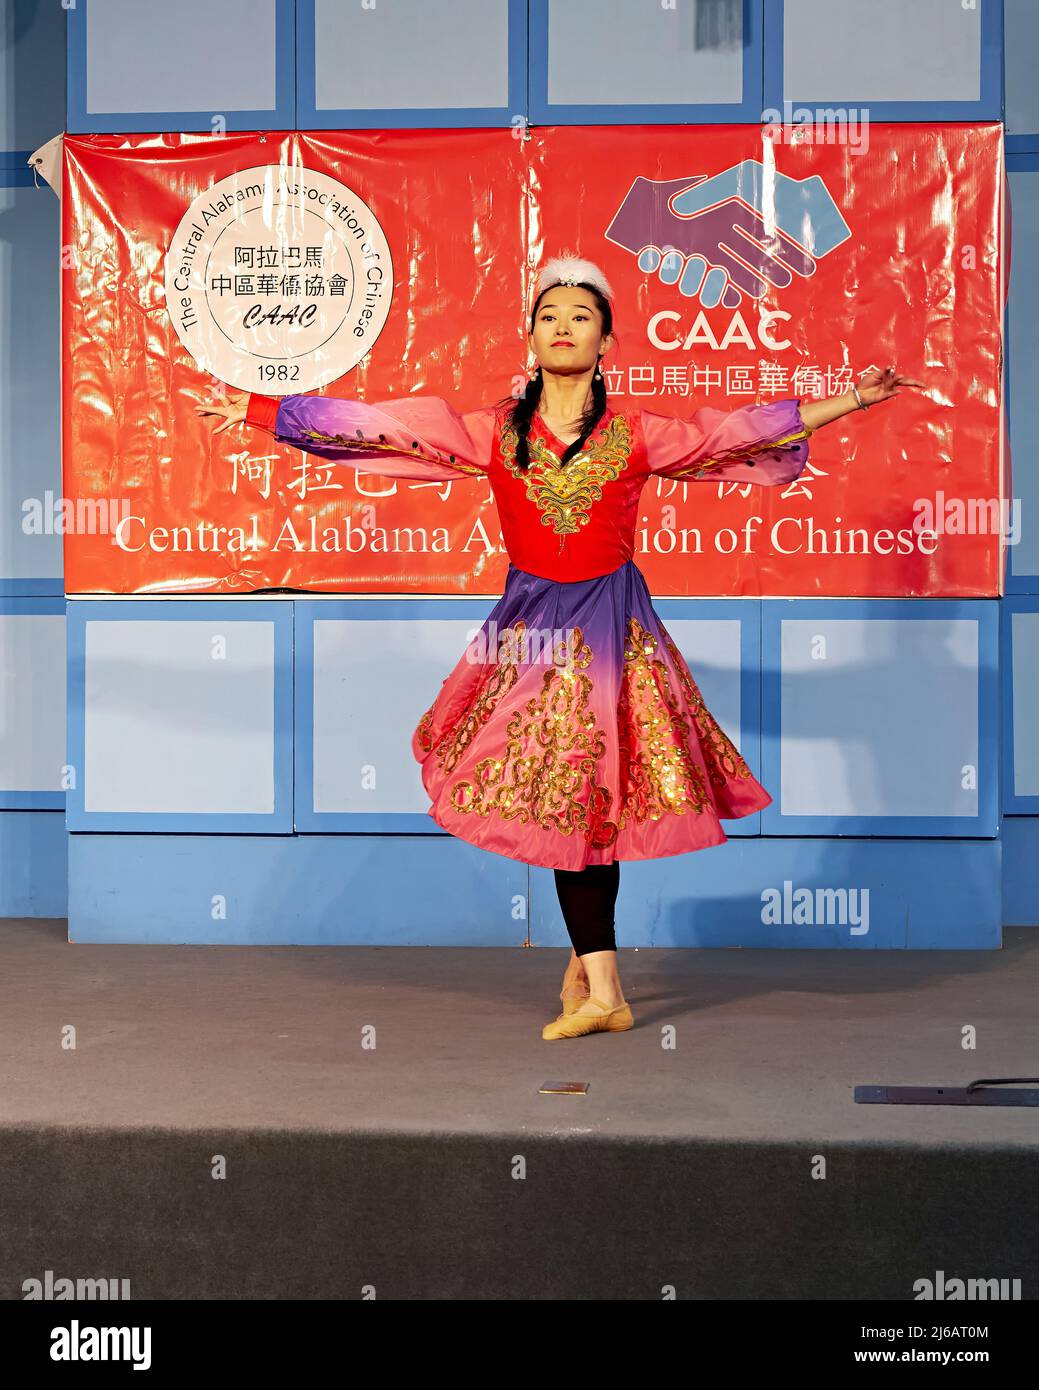 Bailarín chino tradicional con vestimenta original para el Año Nuevo Chino en la Asociación Central de Alabama de Montgomery Alabama Chino Foto de stock